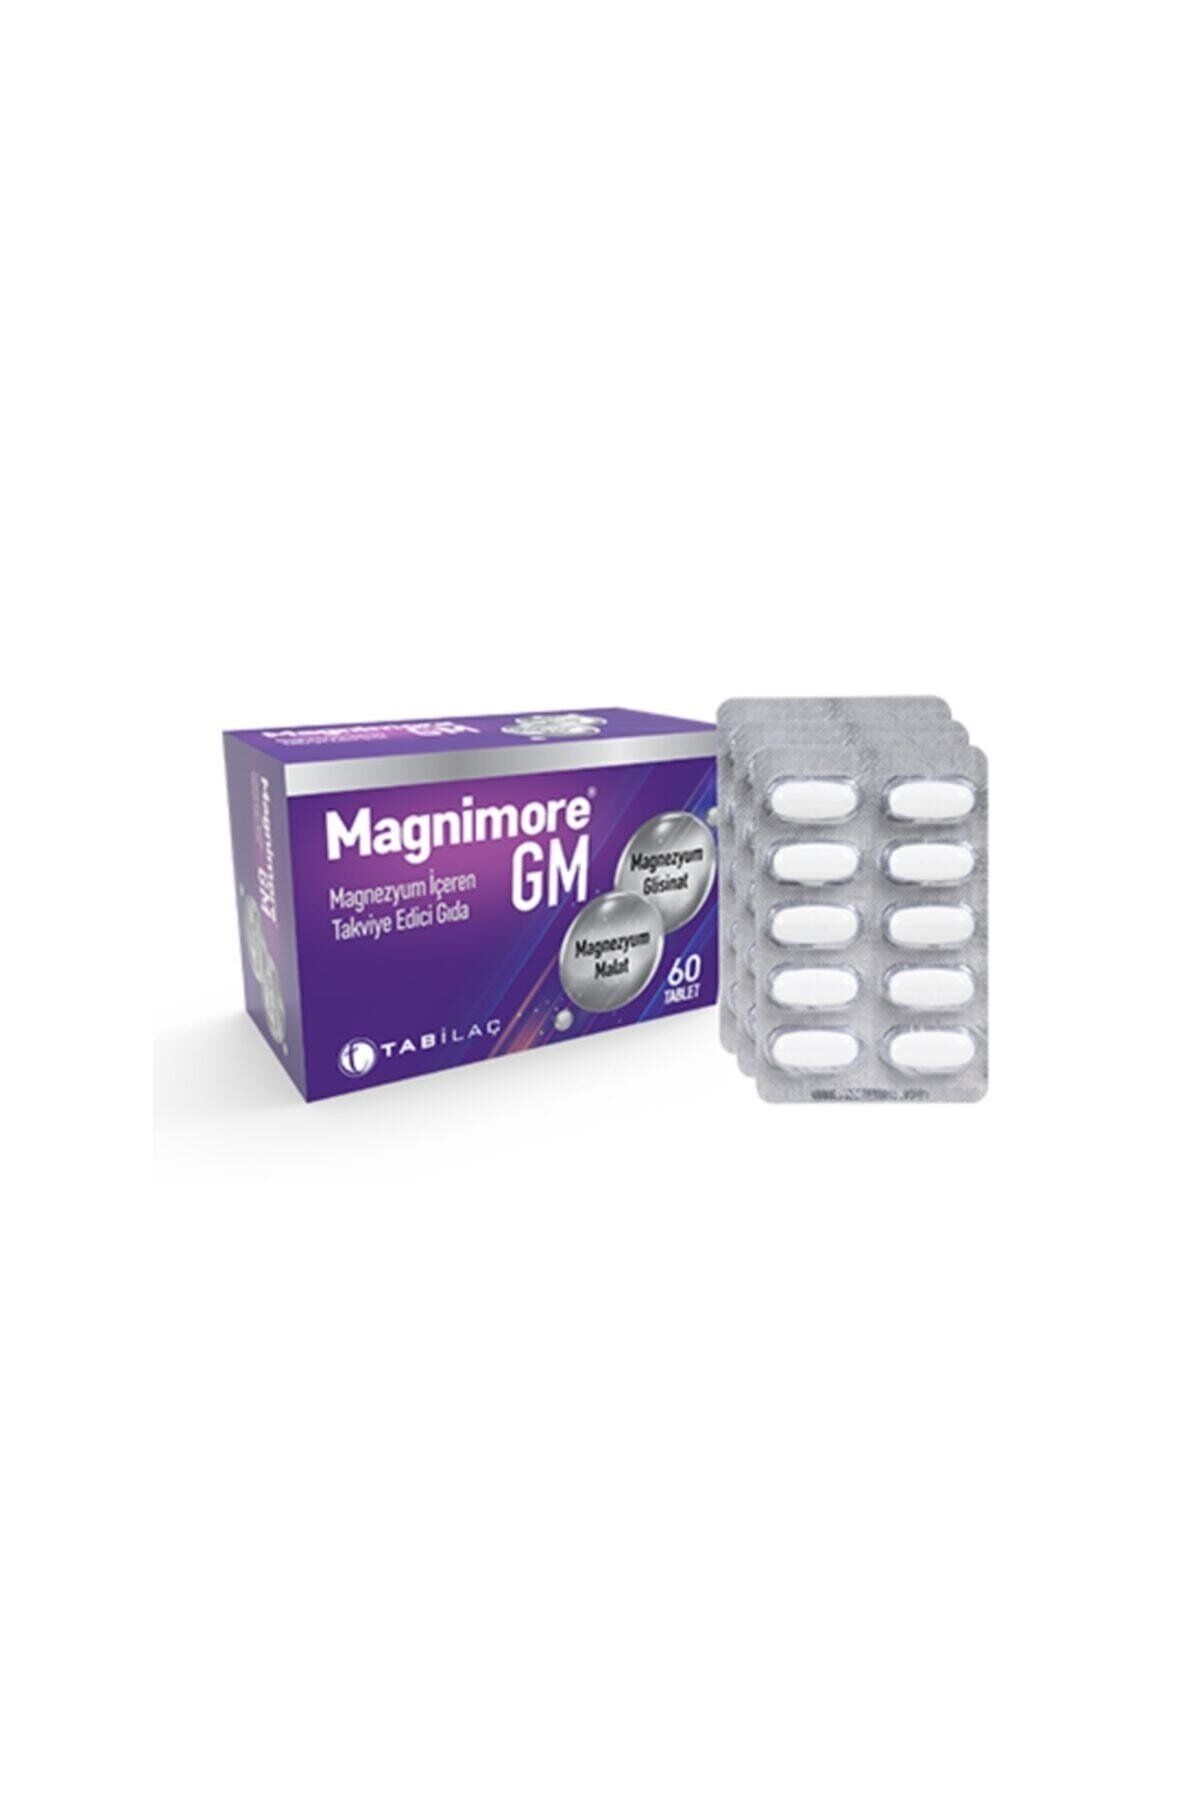 Magnimore Gm 60 Tablet